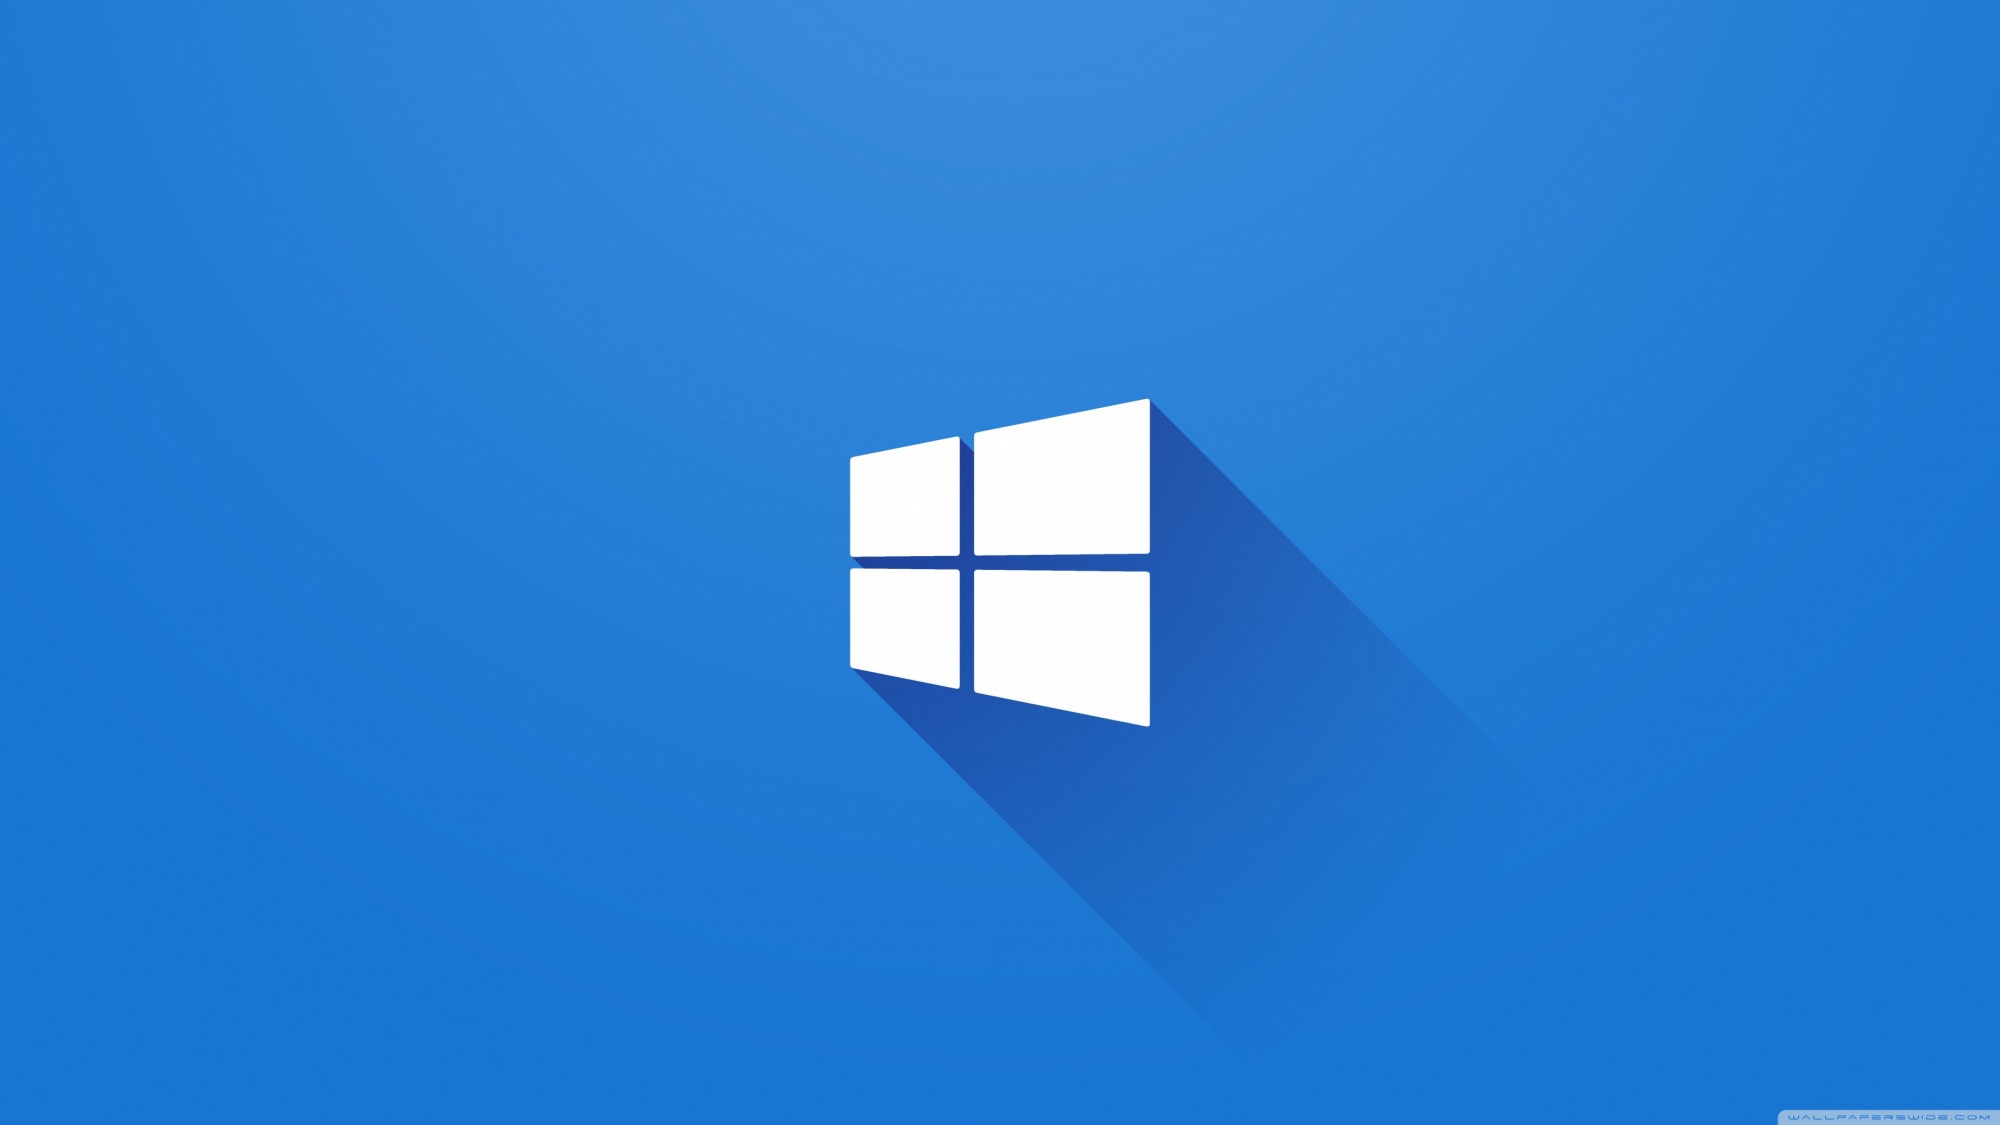 Bạn muốn nâng cấp hệ điều hành máy tính của mình lên Windows 10? Điều đó chắc chắn là một quyết định sáng suốt. Với khả năng hoạt động rất tốt và tính năng hữu ích, Windows 10 là sự lựa chọn hoàn hảo của bạn.